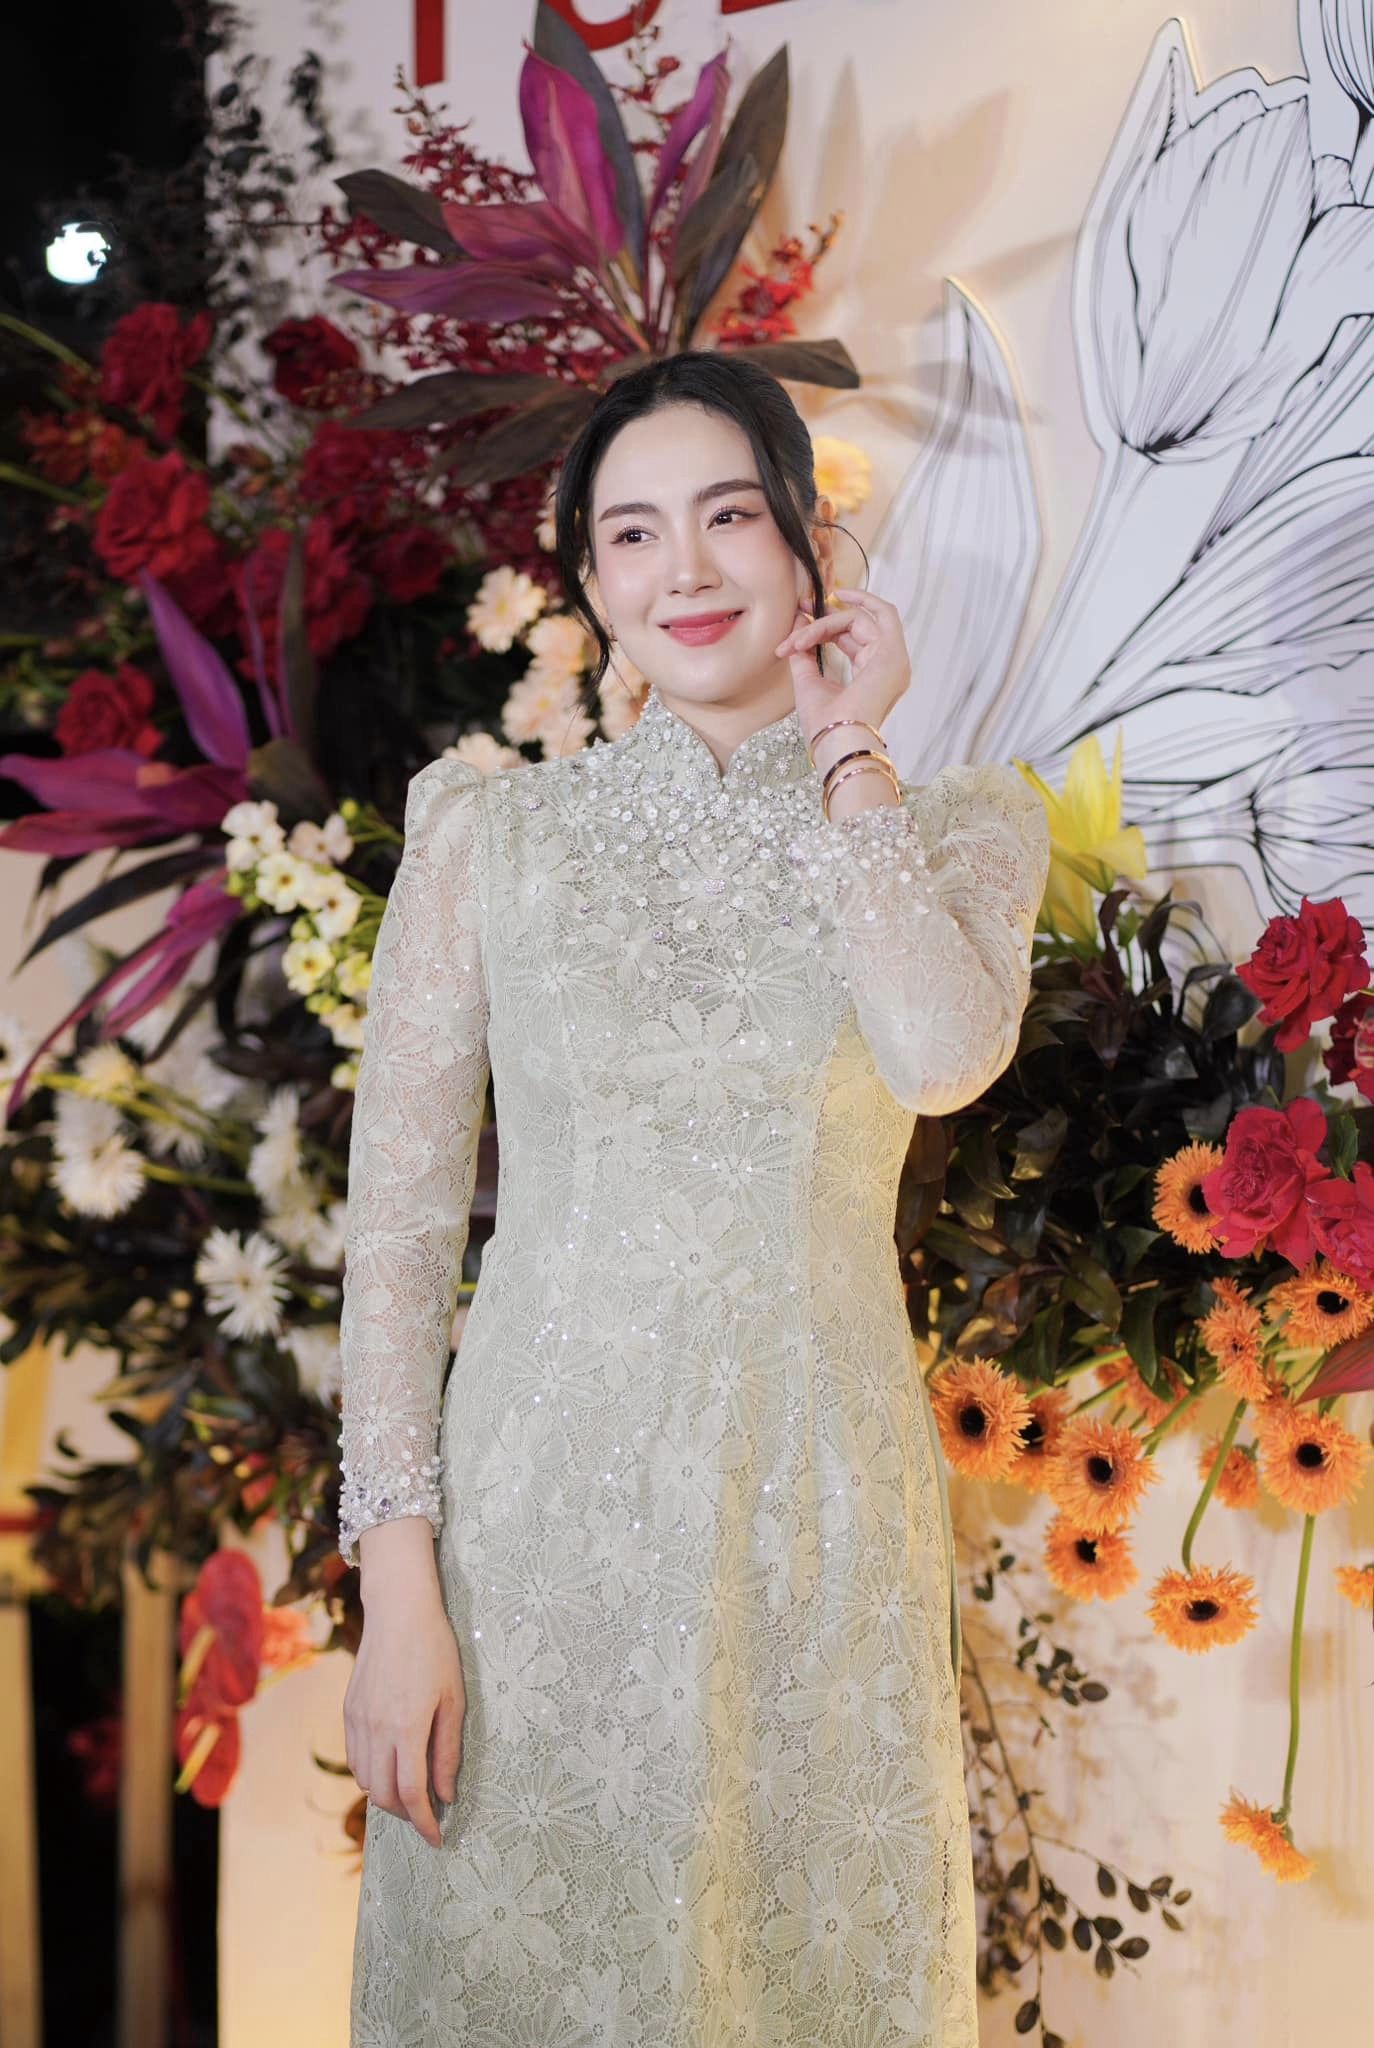 Sau ly hôn MC Mai Ngọc gặp tình trạng sức khỏe báo động: Giảm 4kg, mệt không cầm nổi điện thoại - ảnh 4